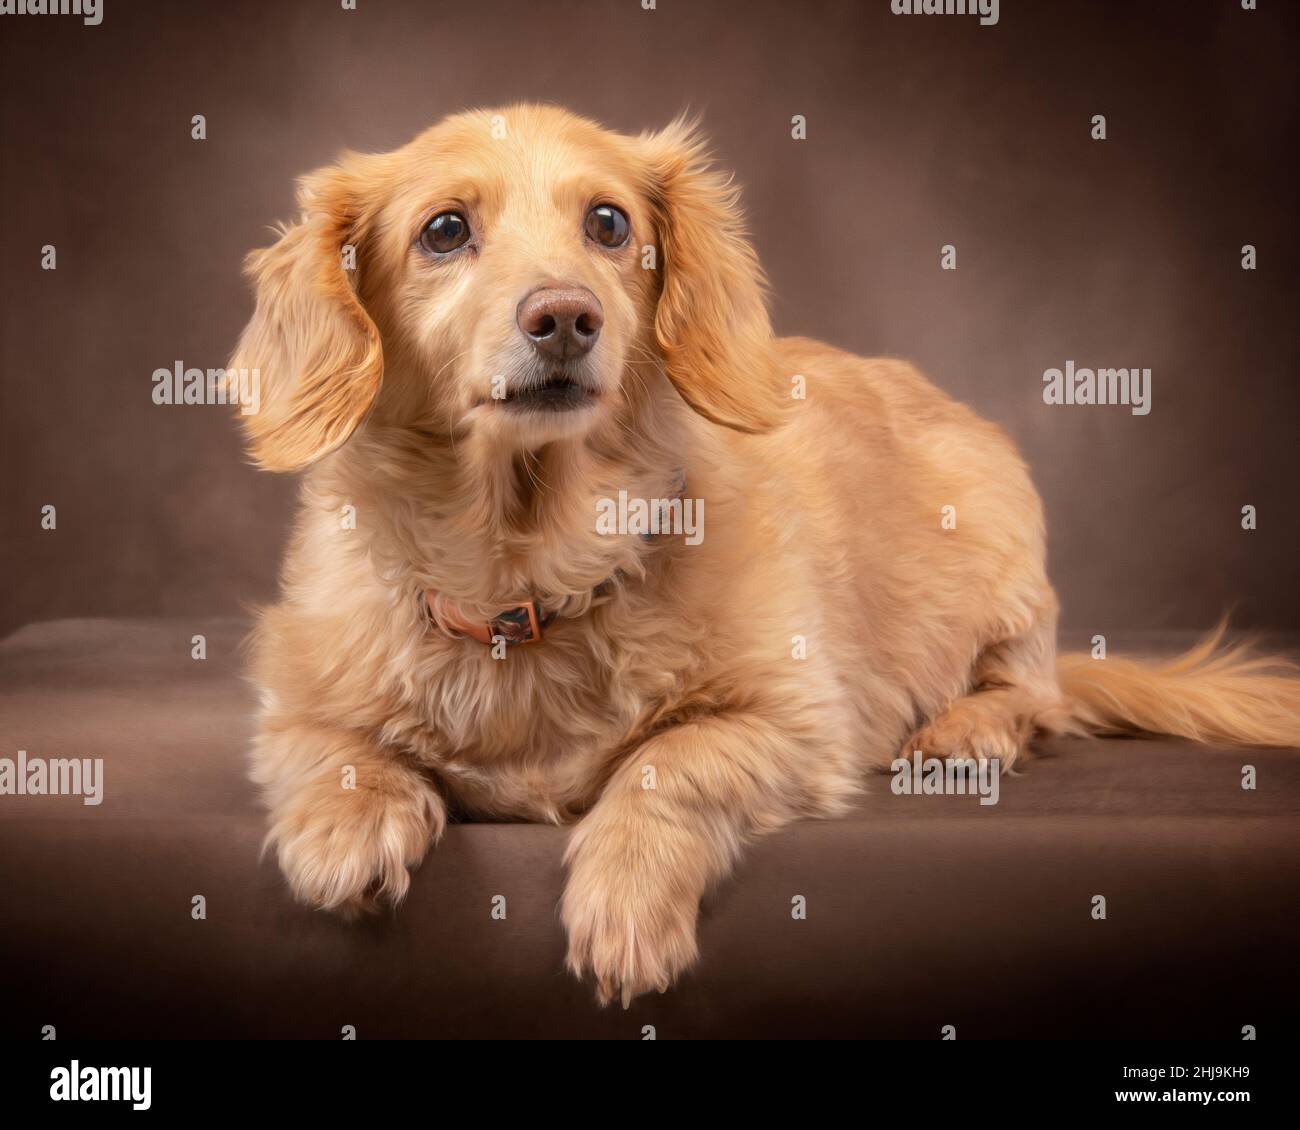 Tiro horizontal de un dachshund crema inglesa de pelo largo posado sobre un fondo marrón oscuro mirando ligeramente a la derecha. Foto de stock